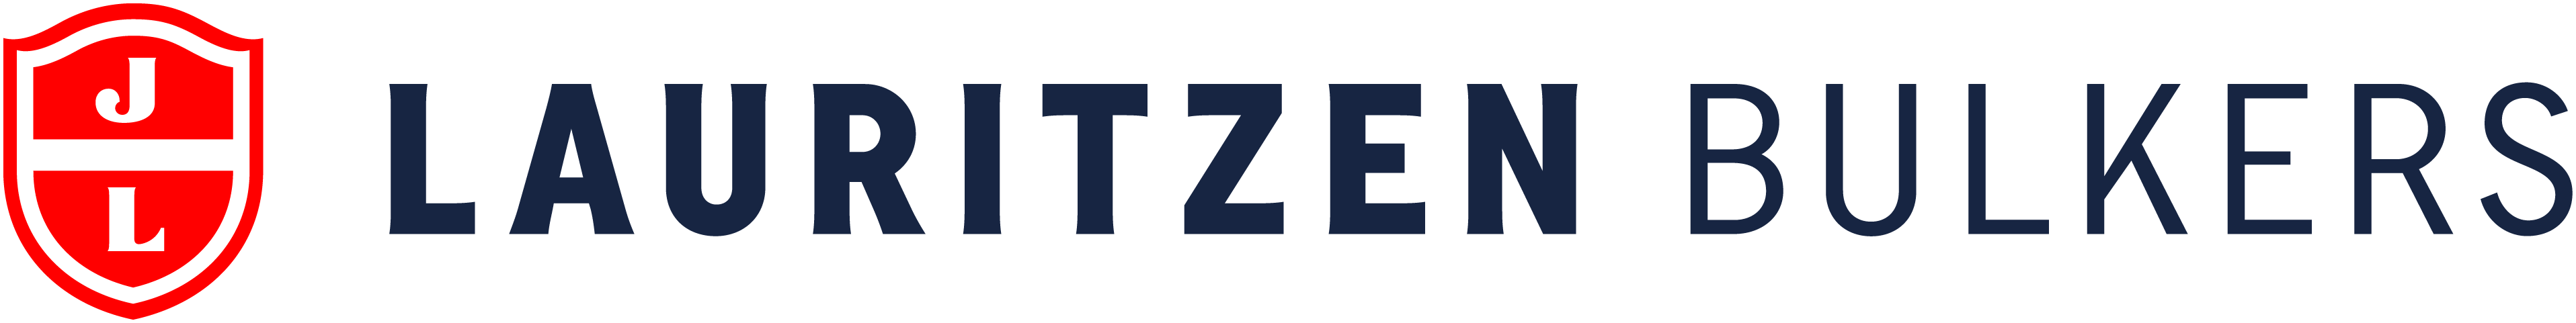 Lauritzen Bulkers Singapore Pte. Ltd. logo